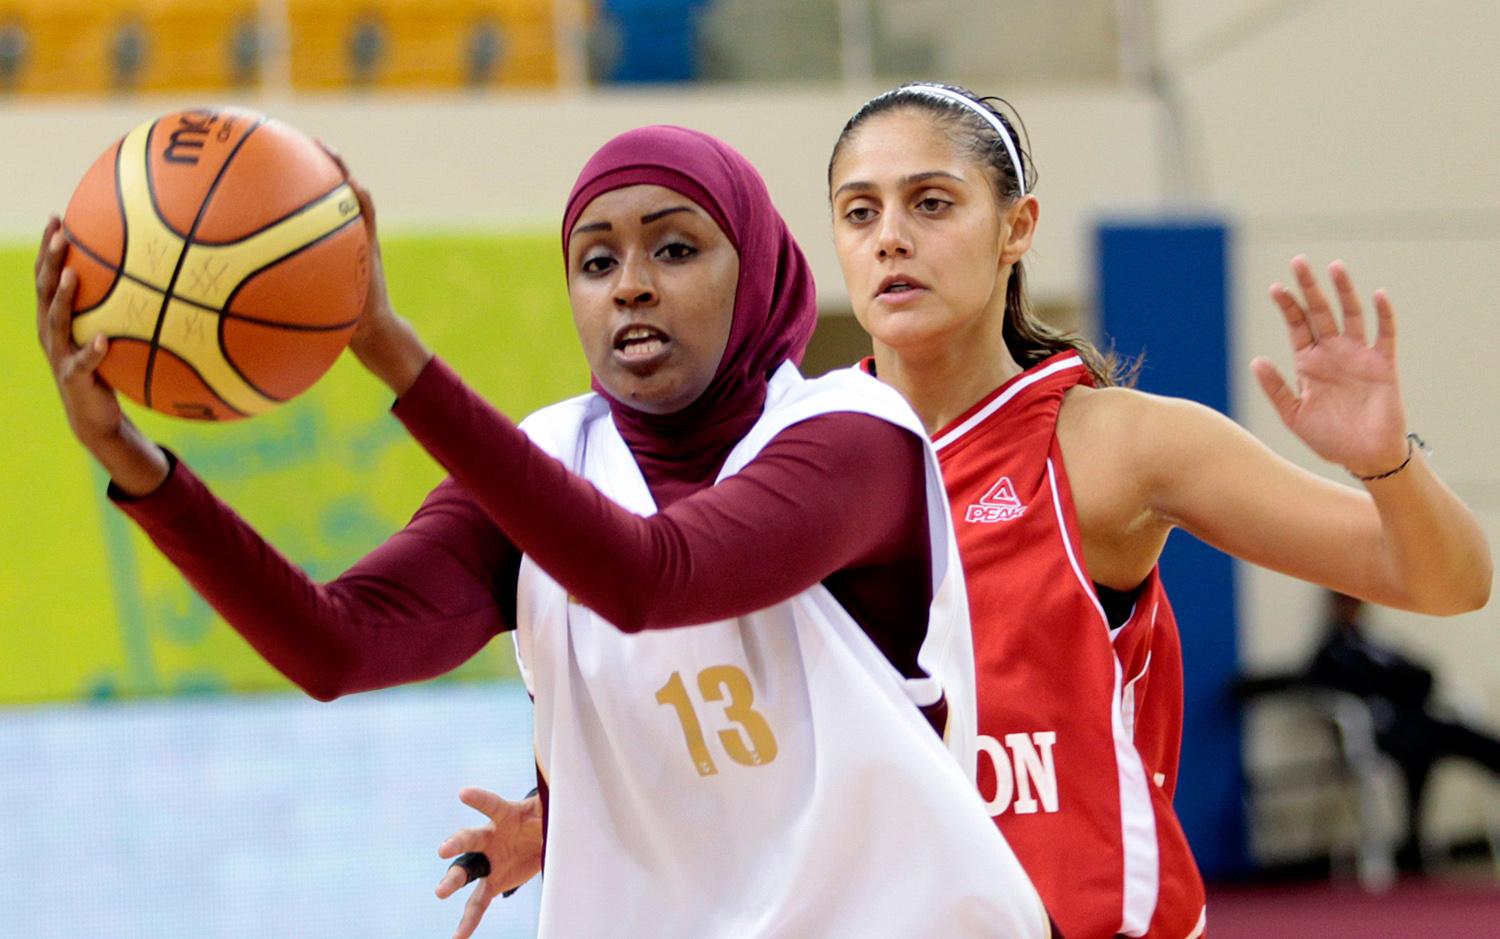 A Libanon-Katar döntő 2011-ben Dohában az Arab Játékokon, amelyen a fejkendő nélkül játszó libanoniak szerezték meg az aranyat. Ellentétes célok